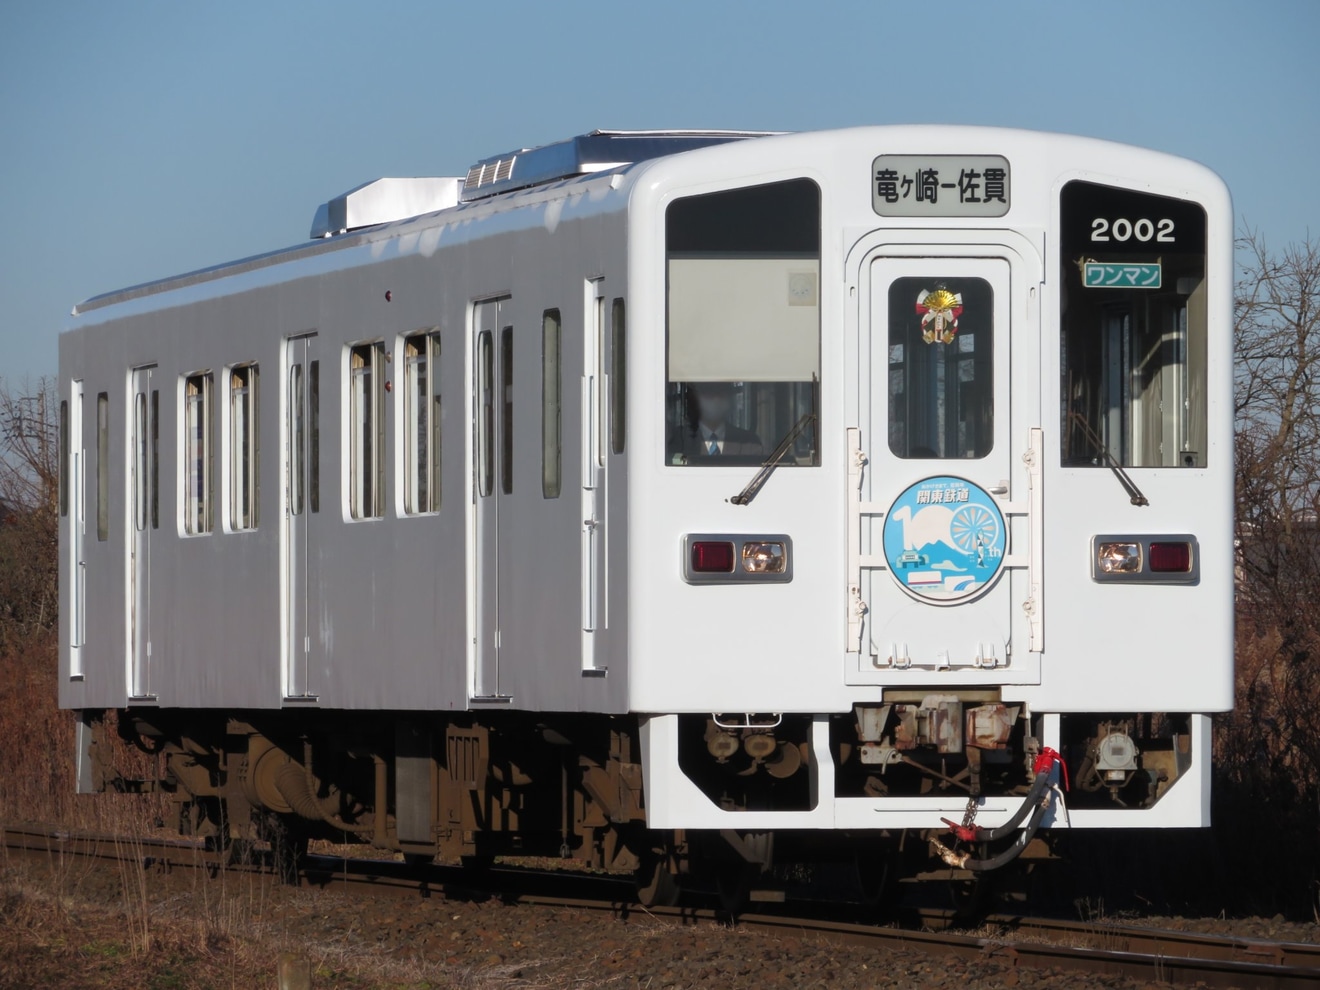 【関鉄】キハ2002が白装束の姿で関東鉄道100周年ヘッドマークが取り付けの拡大写真